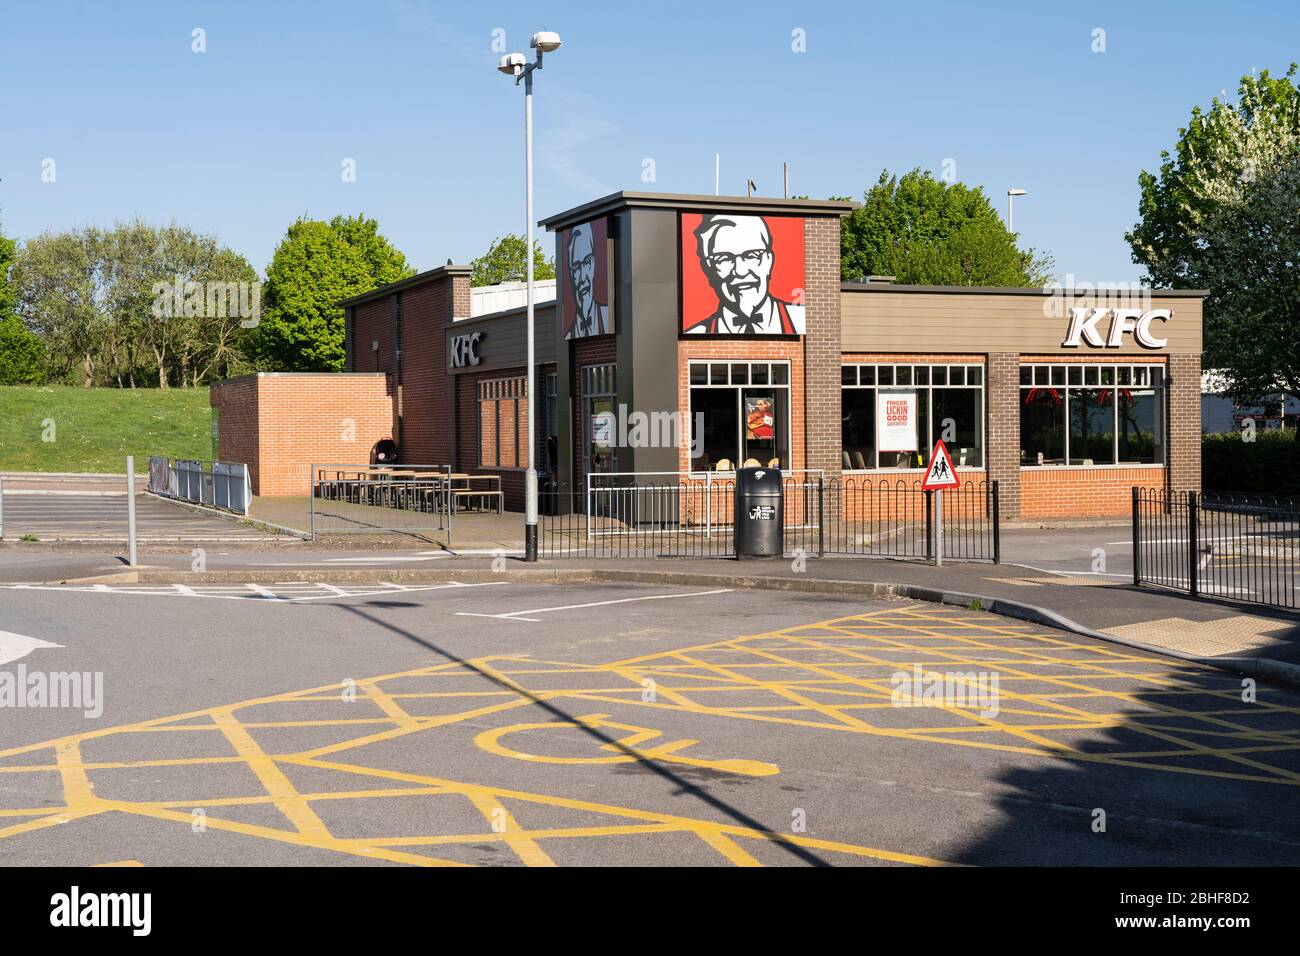 Un KFC traverse une chaîne alimentaire rapide fermée et abandonnée sans clients en raison de la pandémie de Covid 19 de Coronavirus. Basingstoke, avril 2020 Banque D'Images